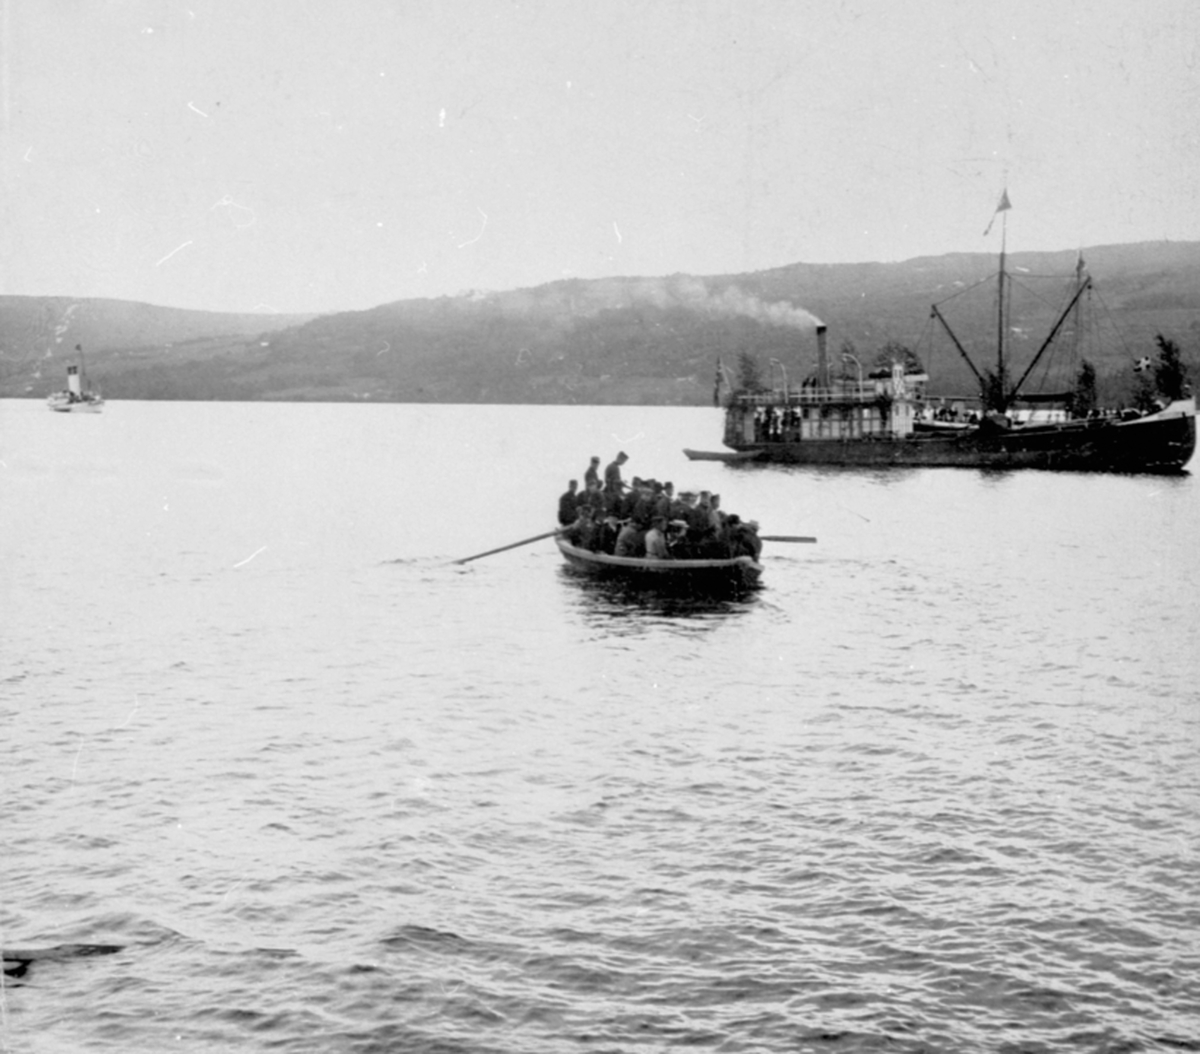 Mjøsbåten D. S. Industri II, pyntet med løv, utenfor Moelv brygge. Robåt full av folk. Kong Oscar i bakgrunnen.